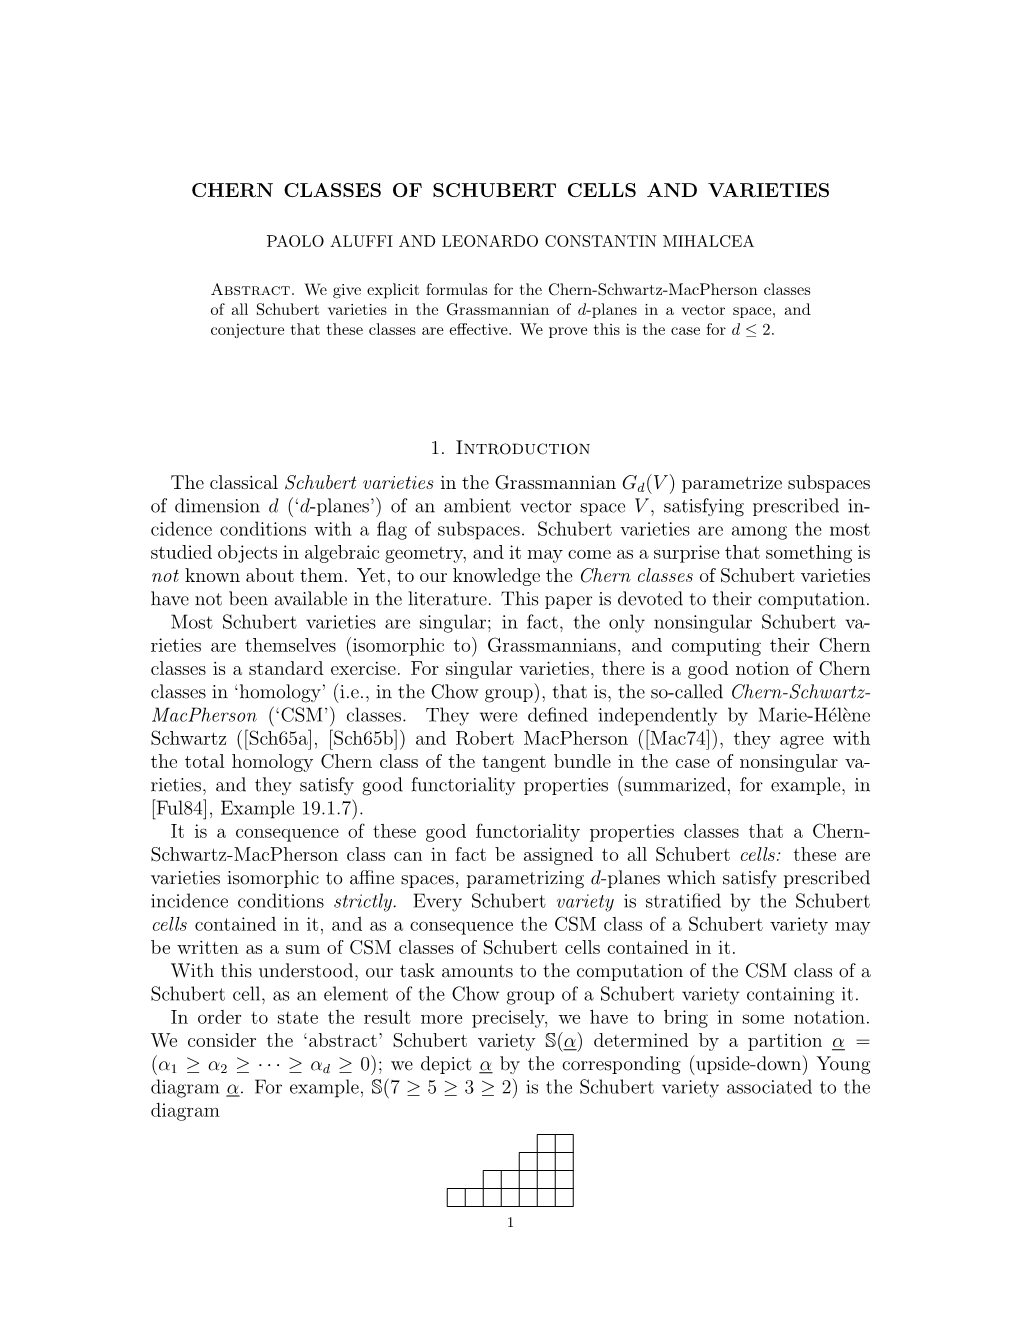 Chern Classes of Schubert Cells and Varieties